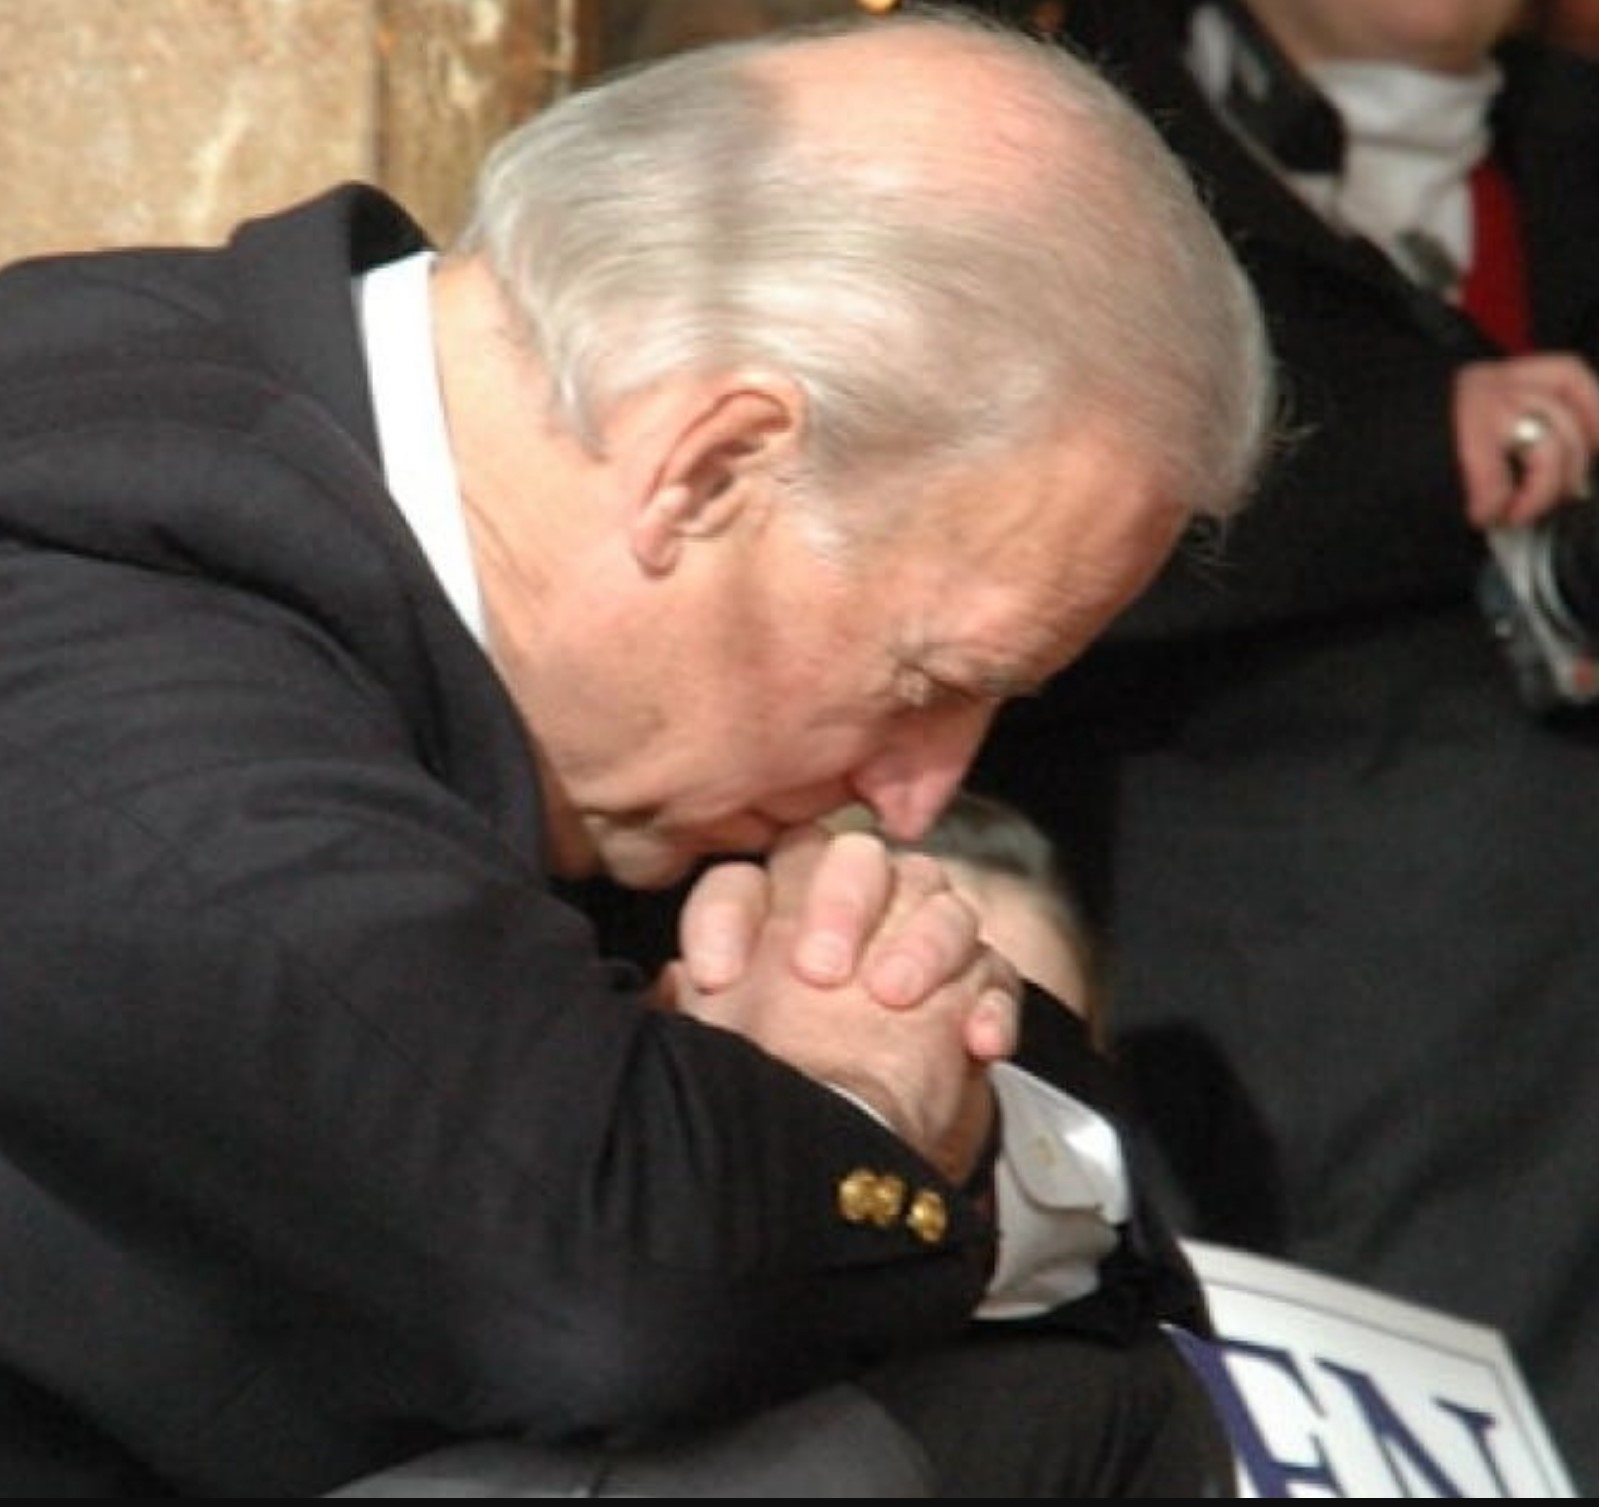 Picture of defeated Joe Biden